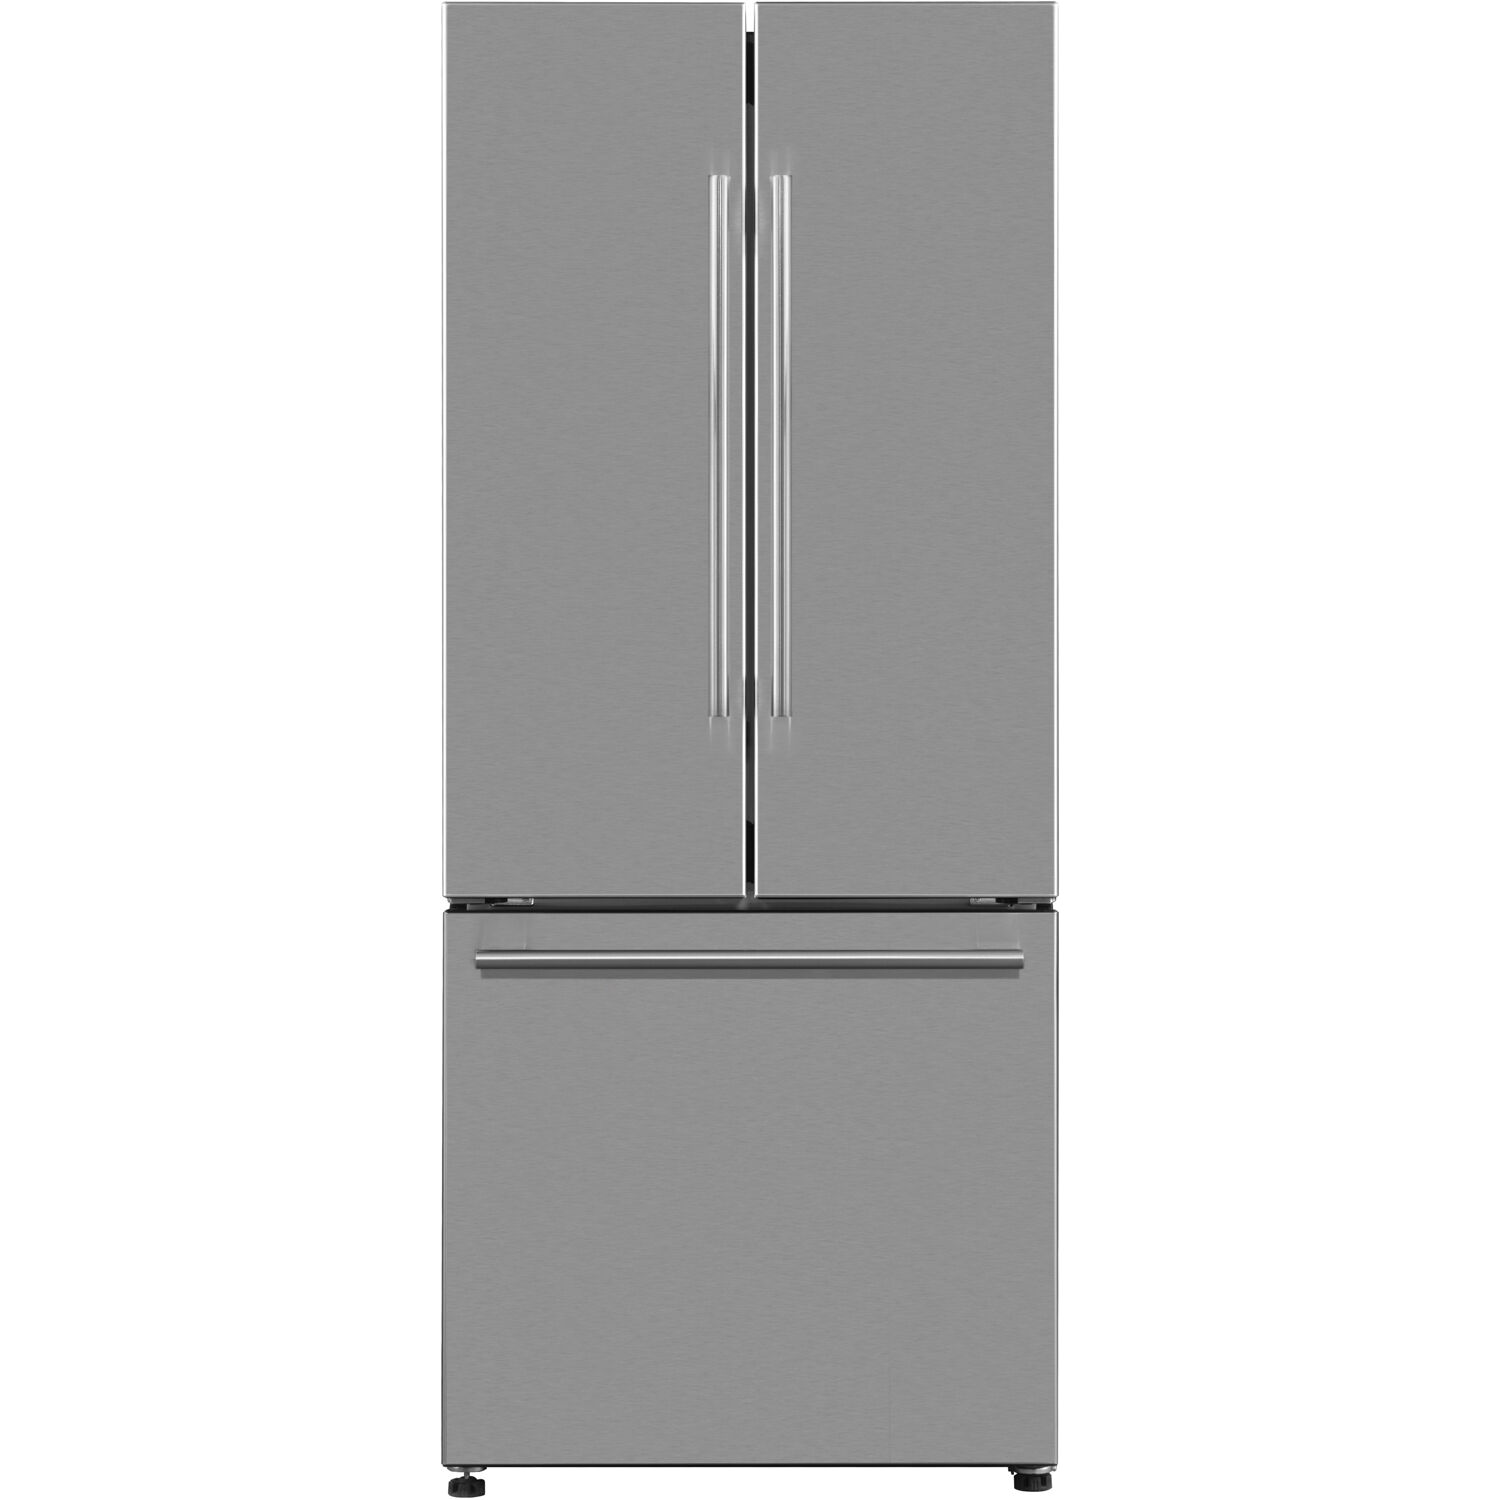 Galanz 16-Cu. Ft. 3-Door French Door Refrigerator, Stainless Steel - image 1 of 12